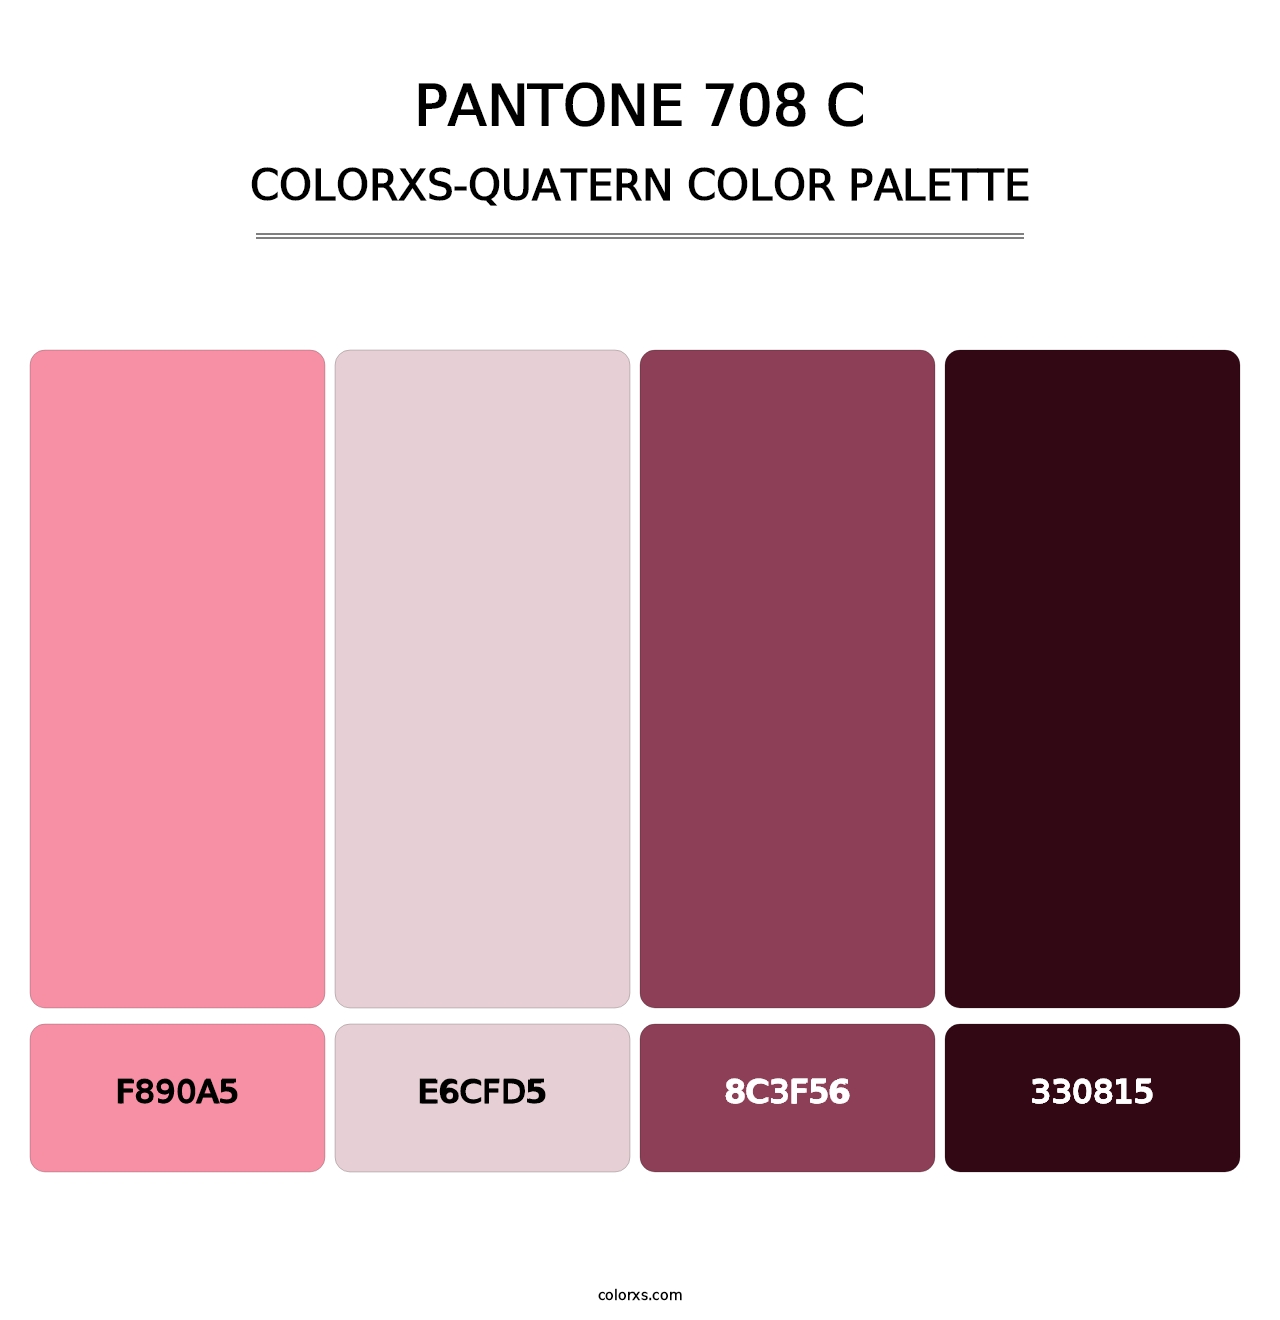 PANTONE 708 C - Colorxs Quatern Palette